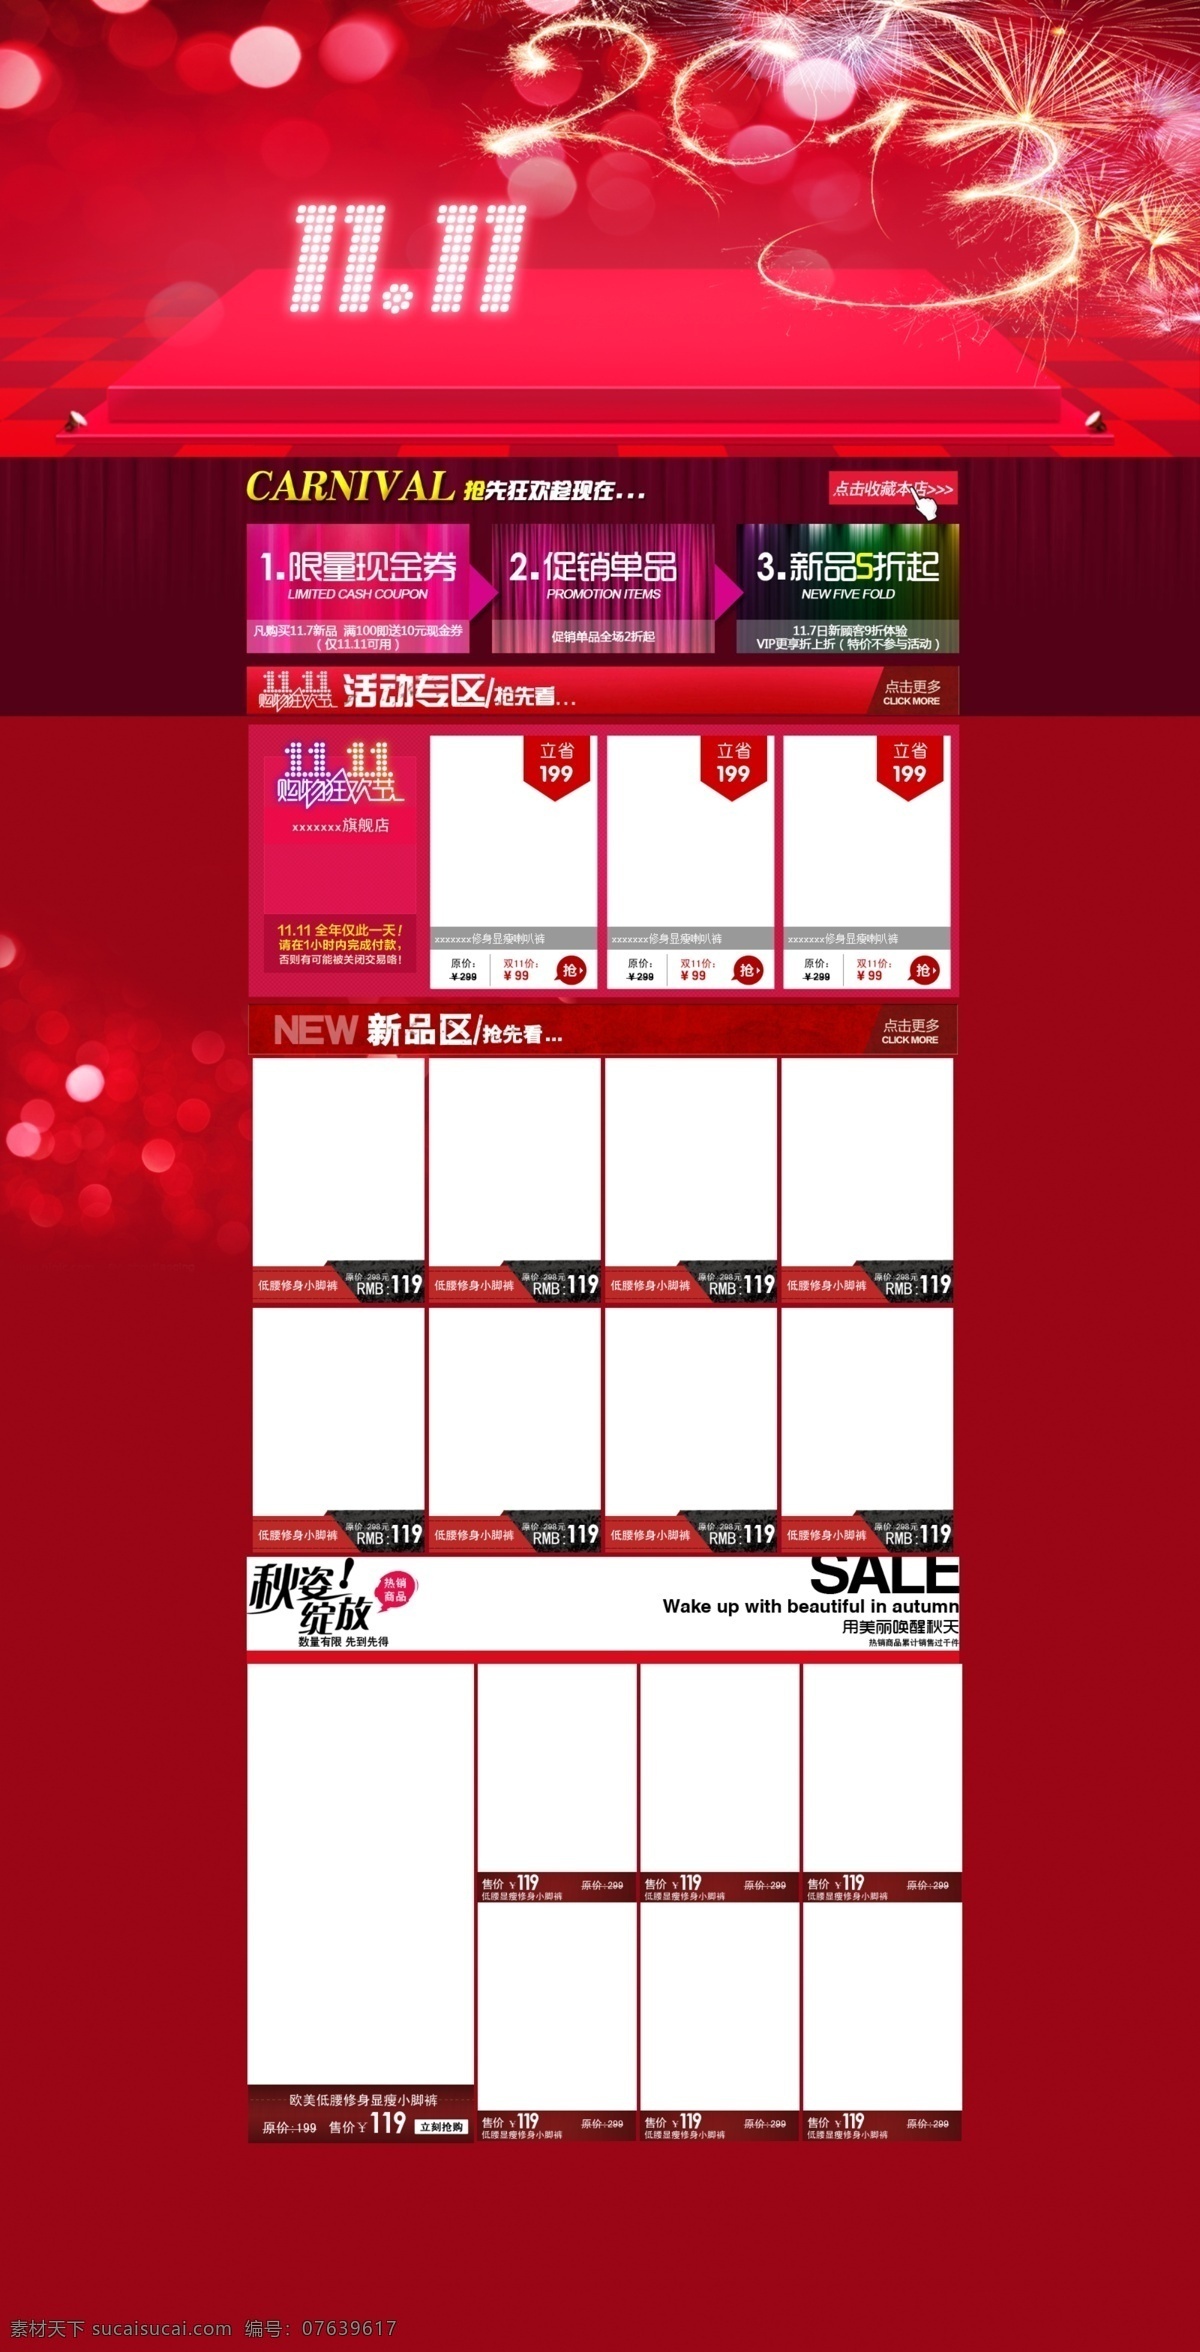 淘宝 双 活动 首页 分层 1111 2013 红色 双11 原创 中文模板 模板下载 淘宝素材 淘宝促销海报